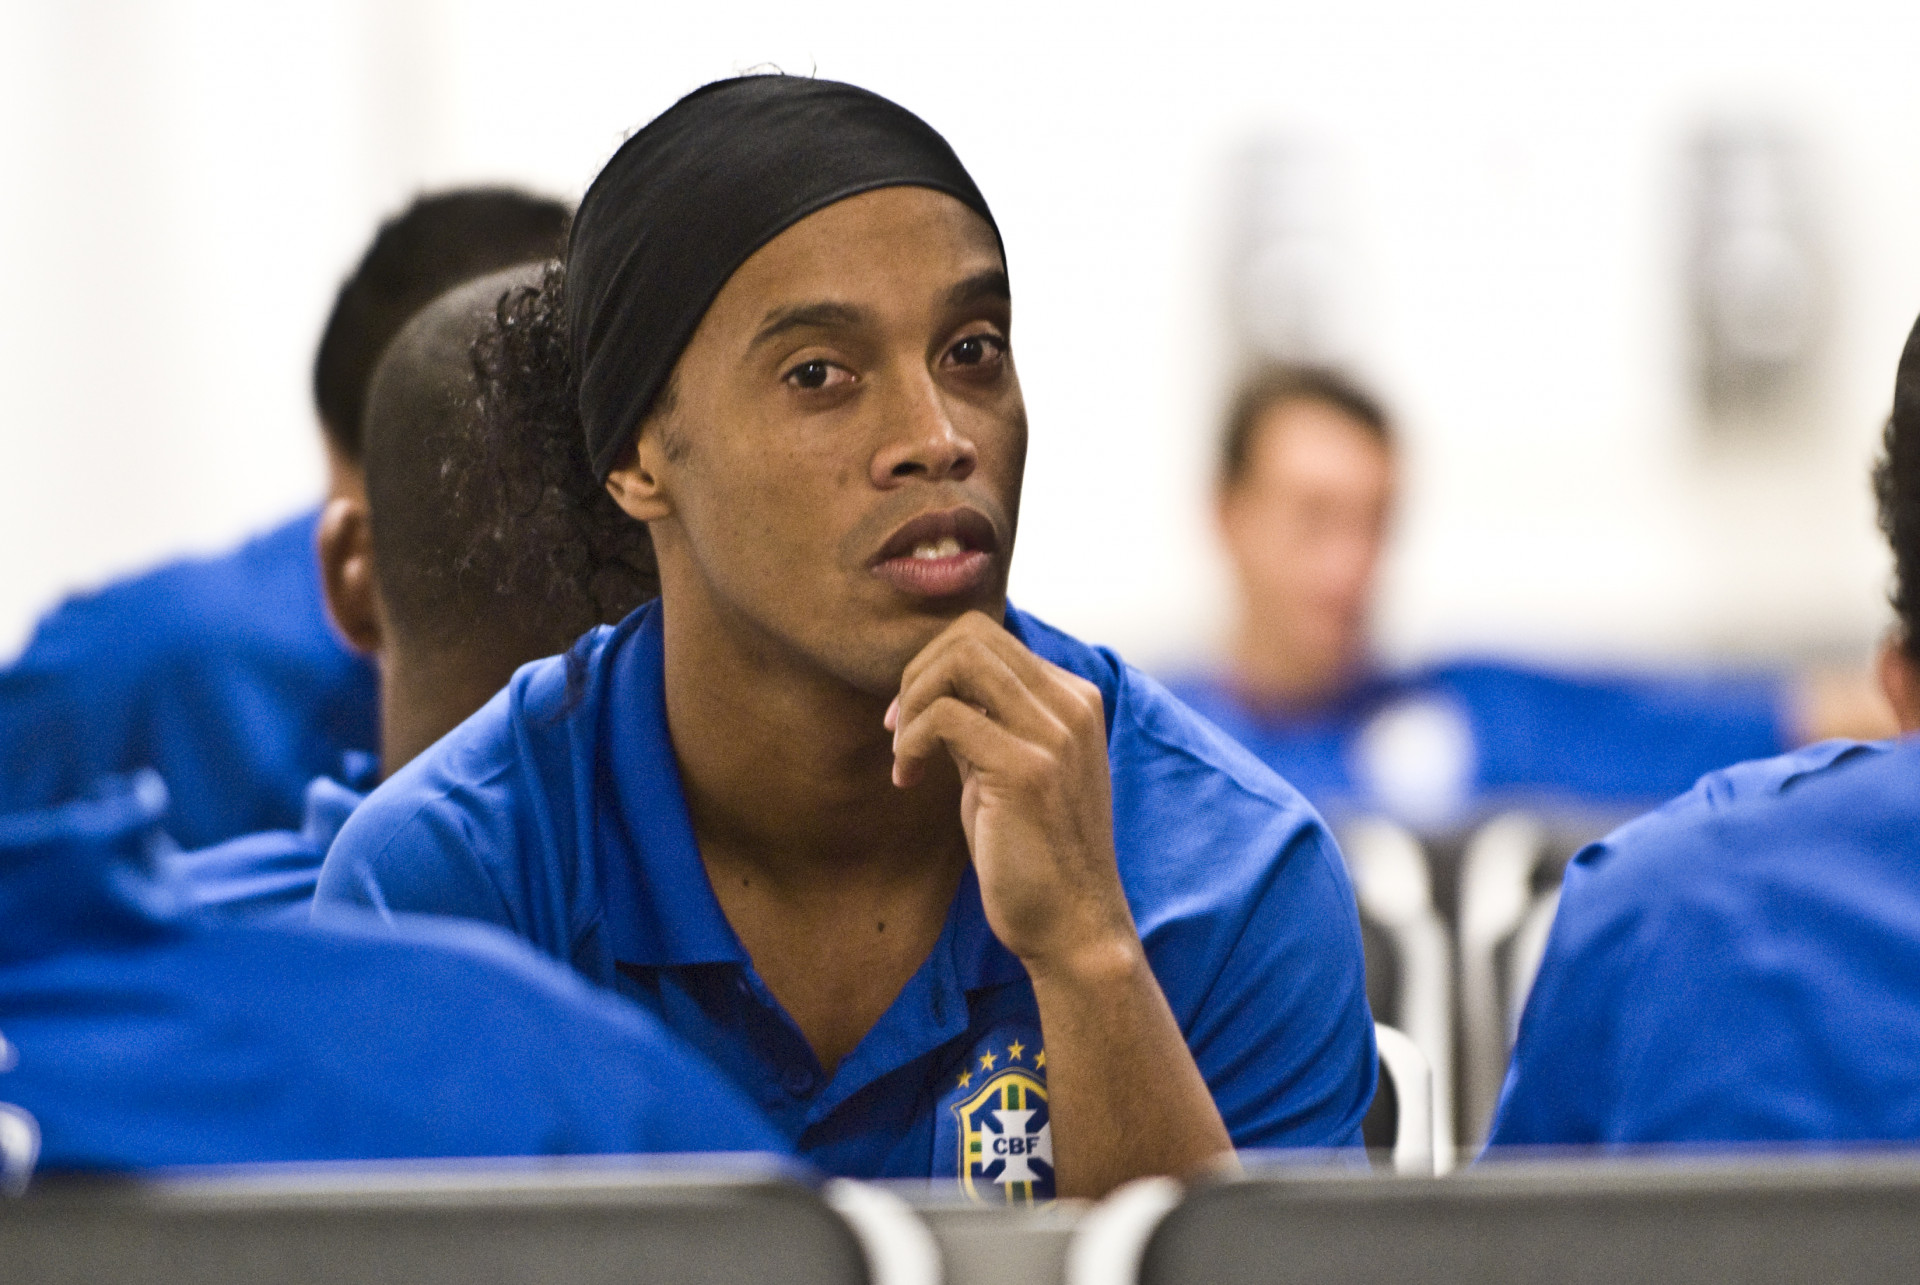 Ronaldinho egy hónapja börtönben, kevés az esély a szabadulására